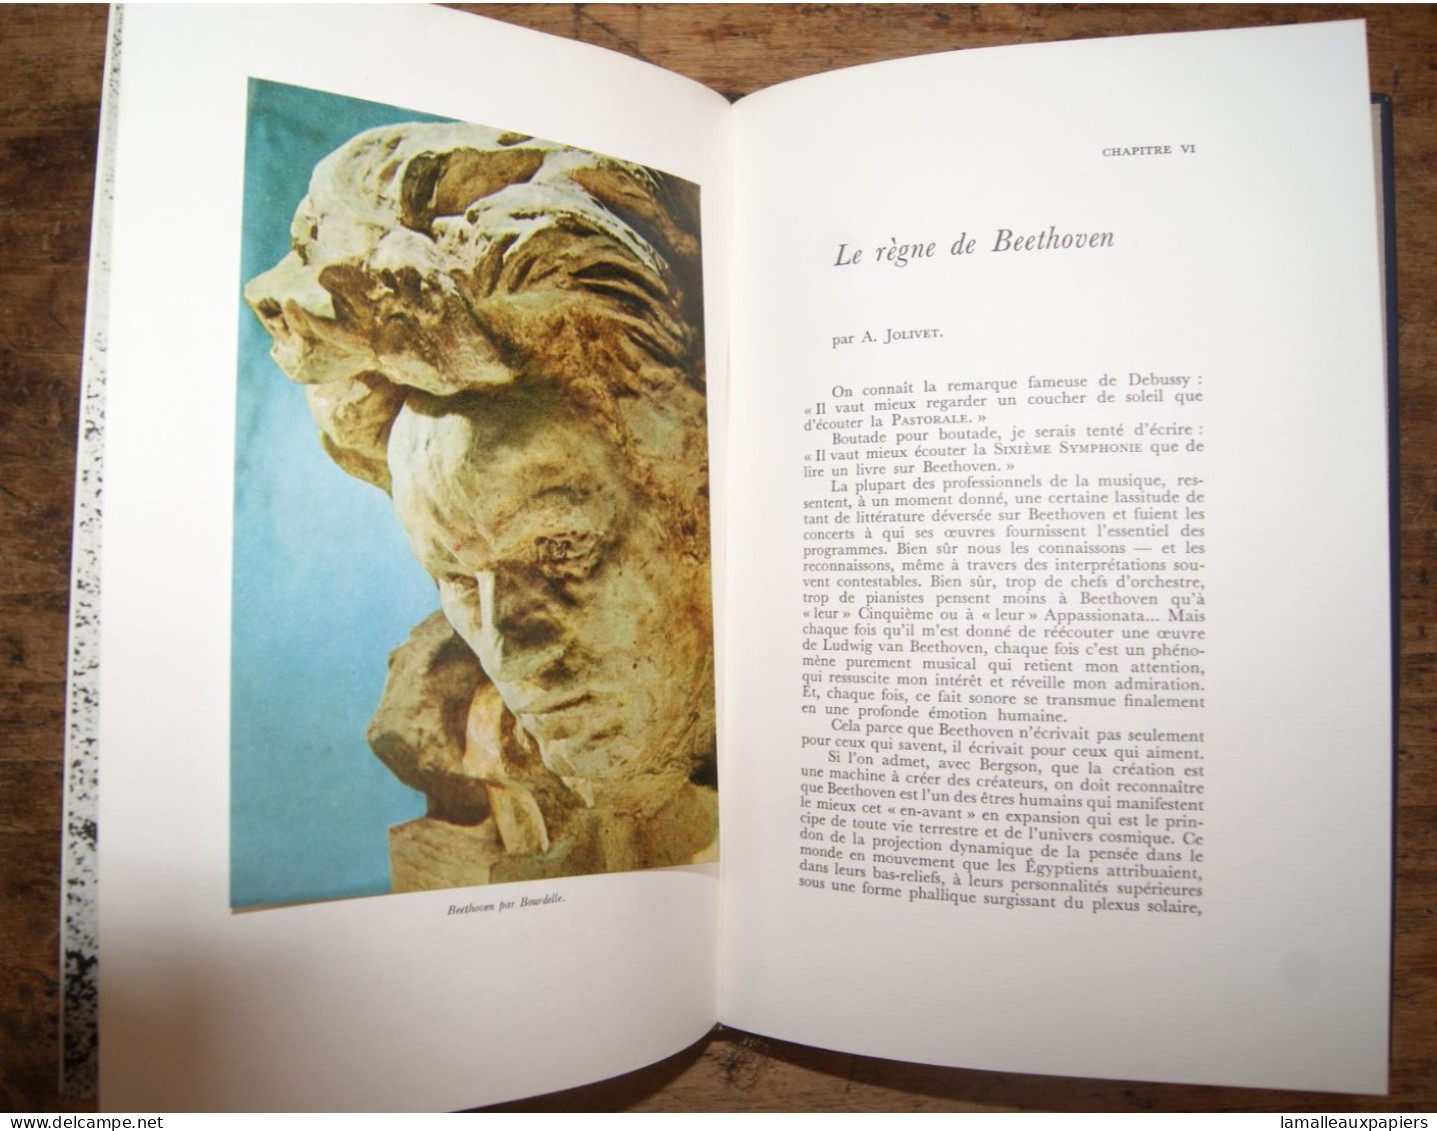 Livre "BEETHOVEN" collection génies et réalités 1961